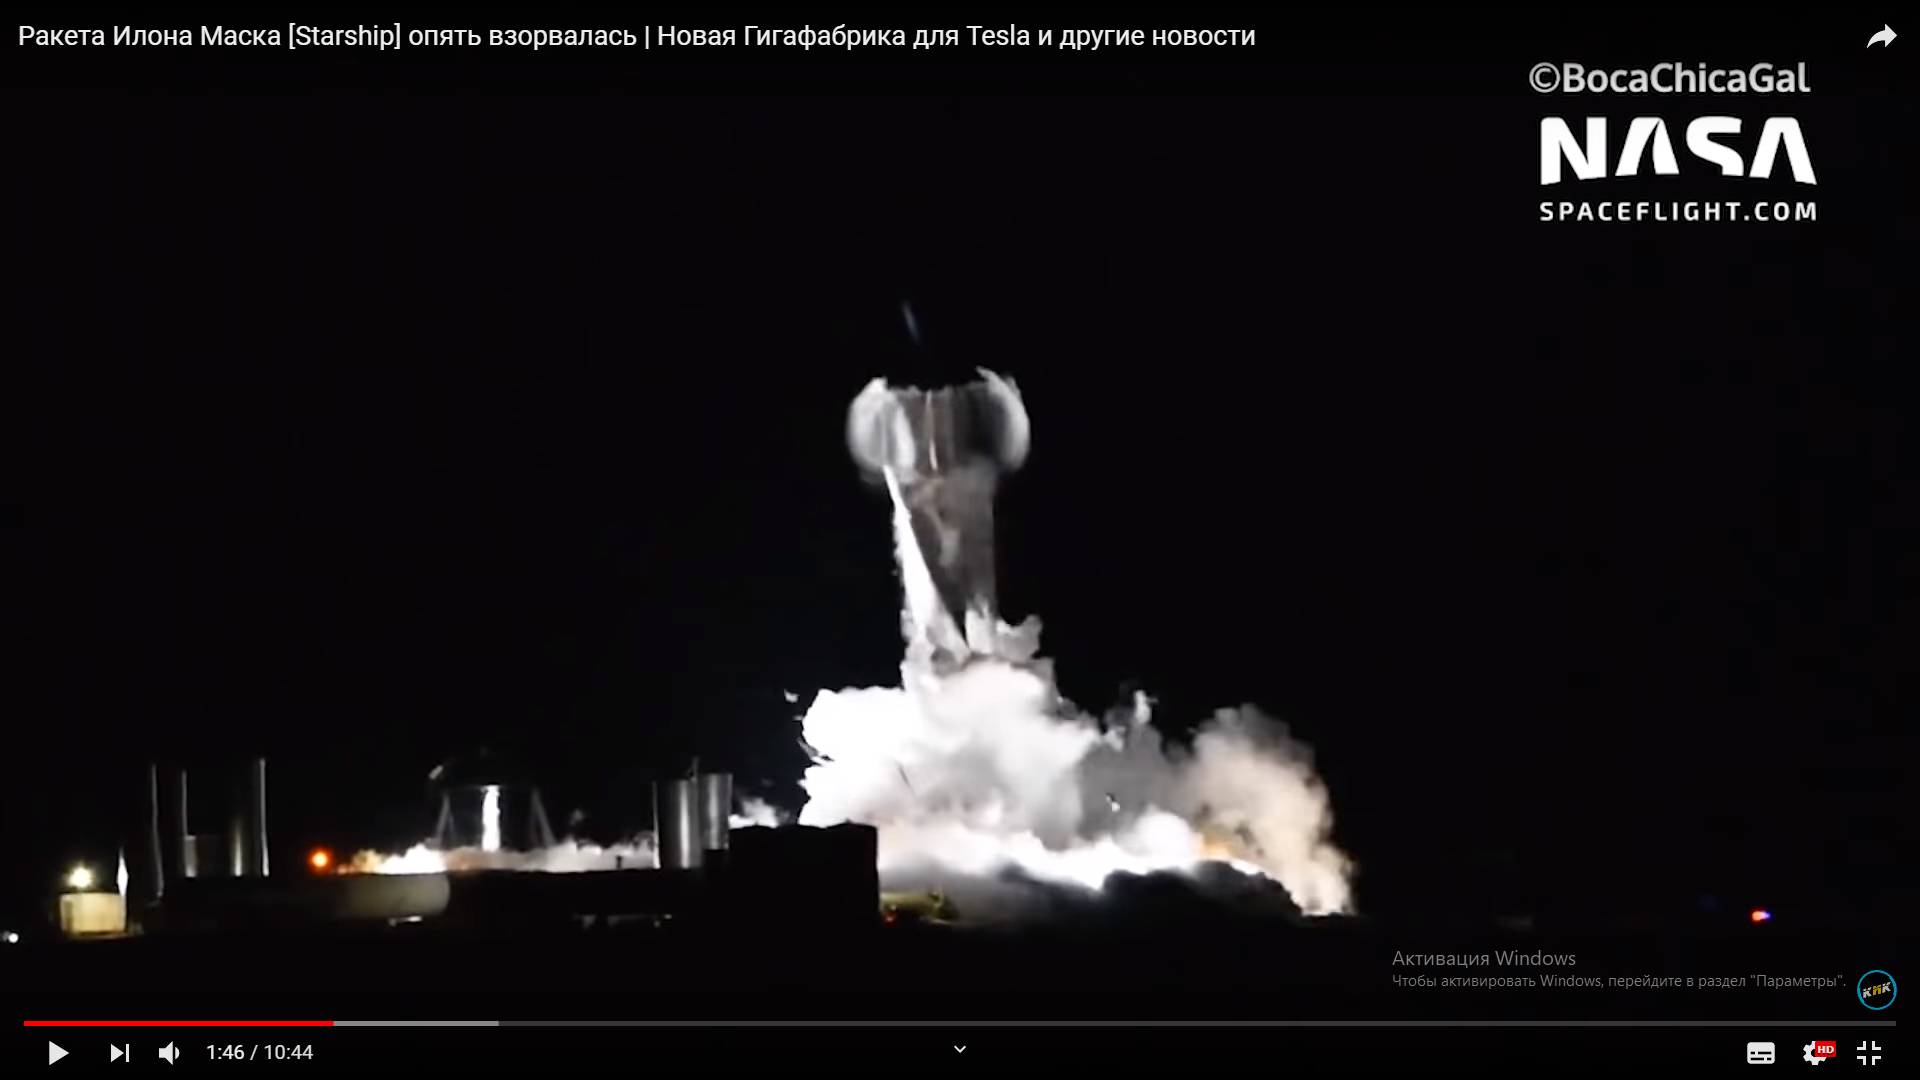 Цитата из видео «Ракета Илона Маска [Starship] опять взорвалась | Новая Гигафабрика для Tesla и другие новости» пользователя Кик Обзор. youtube.com